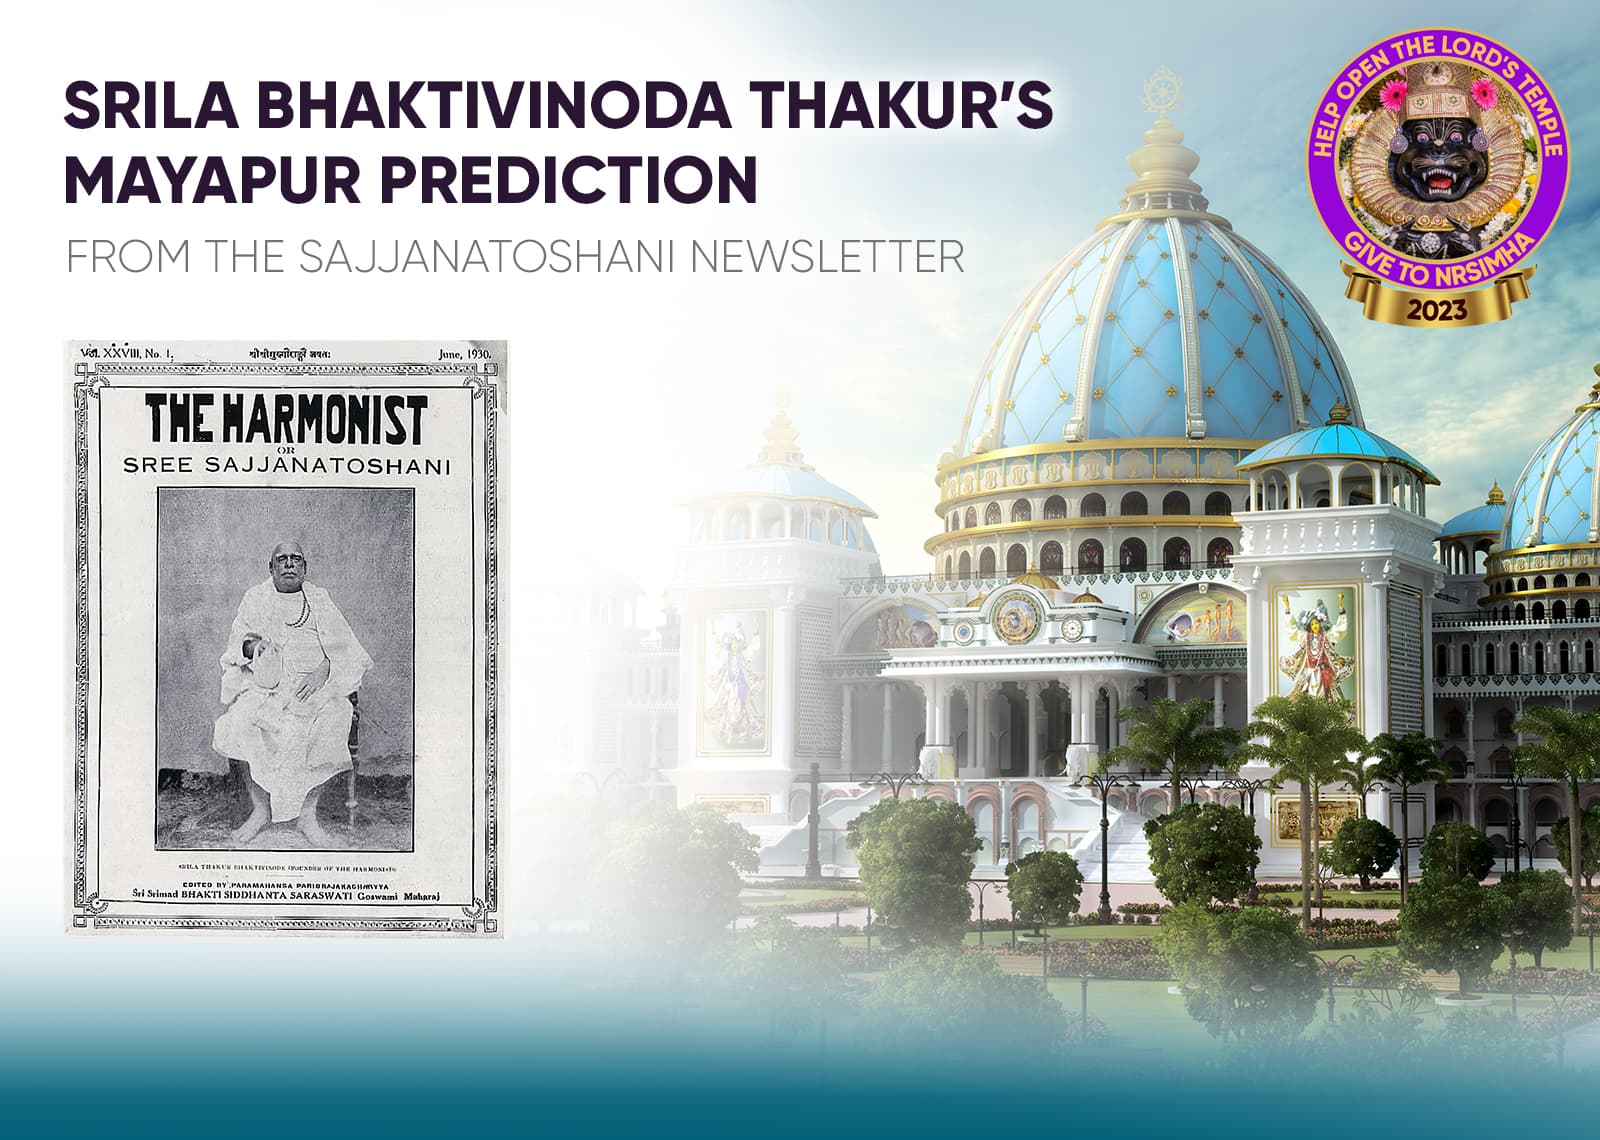 La predizione di Mayapur di Srila Bhaktivinoda Thakura&#039